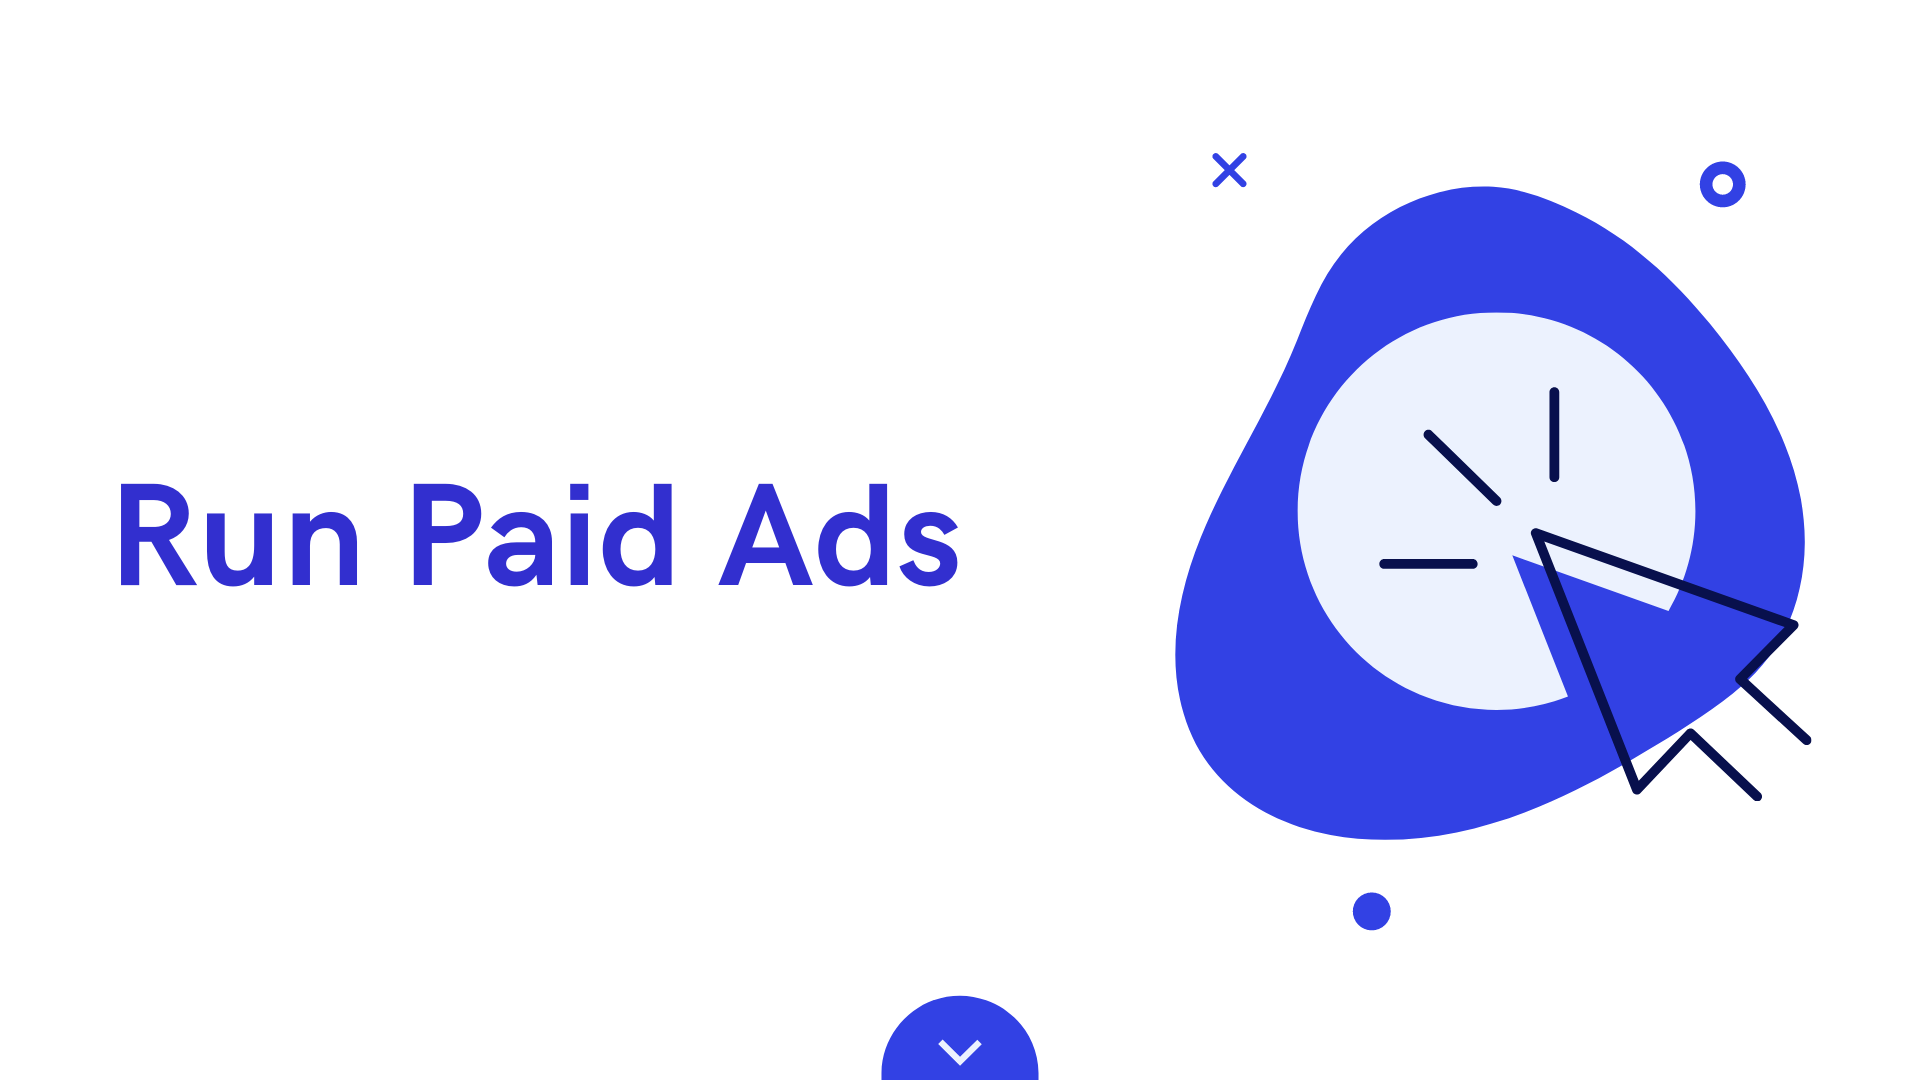 Run paid ads